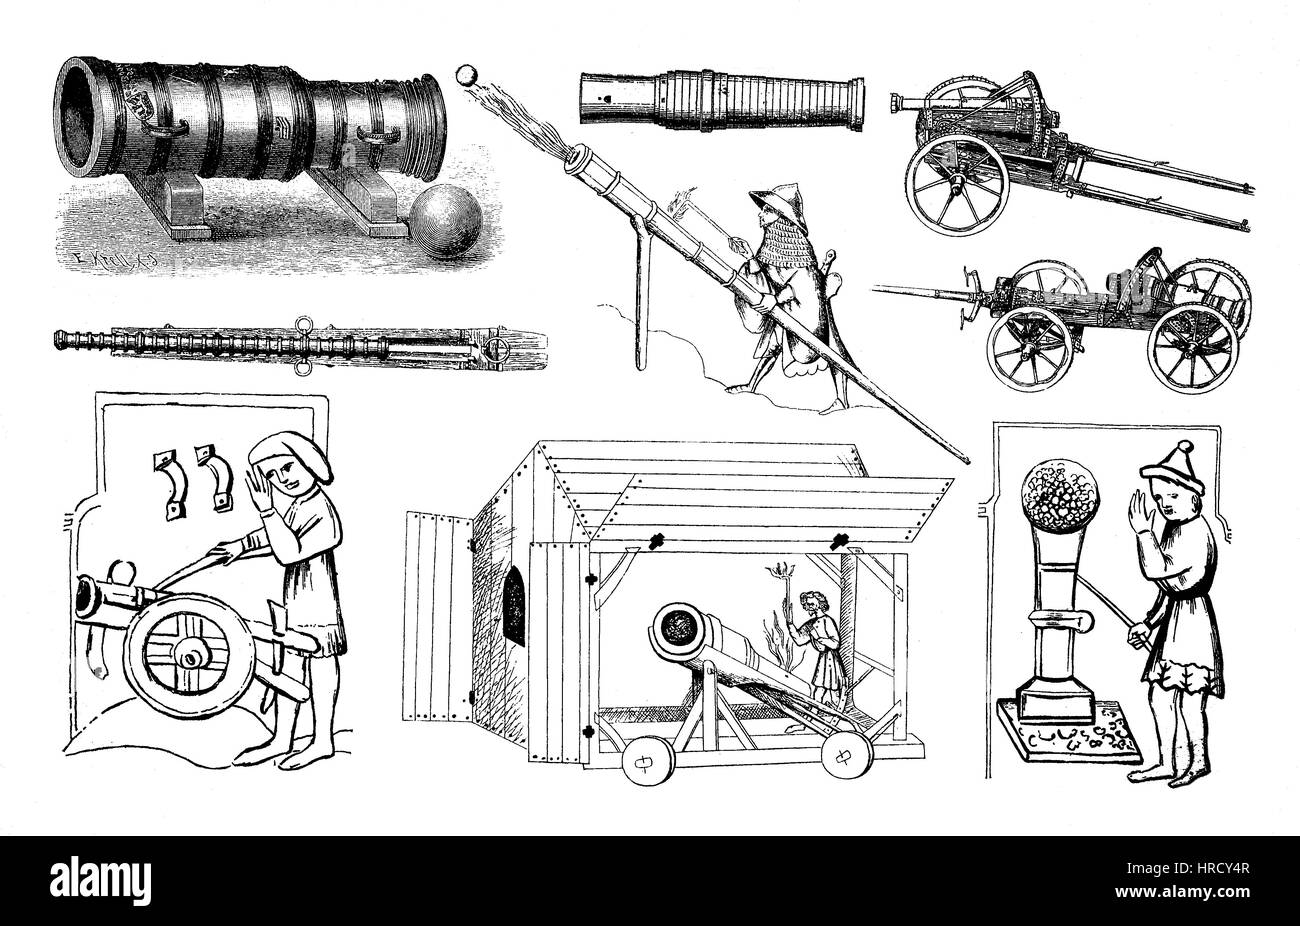 Illustrations de divers types d'armes d'artillerie la plus ancienne, l'Allemagne, cannon, arme, reproduction d'une gravure sur bois du xixe siècle, 1885 Banque D'Images